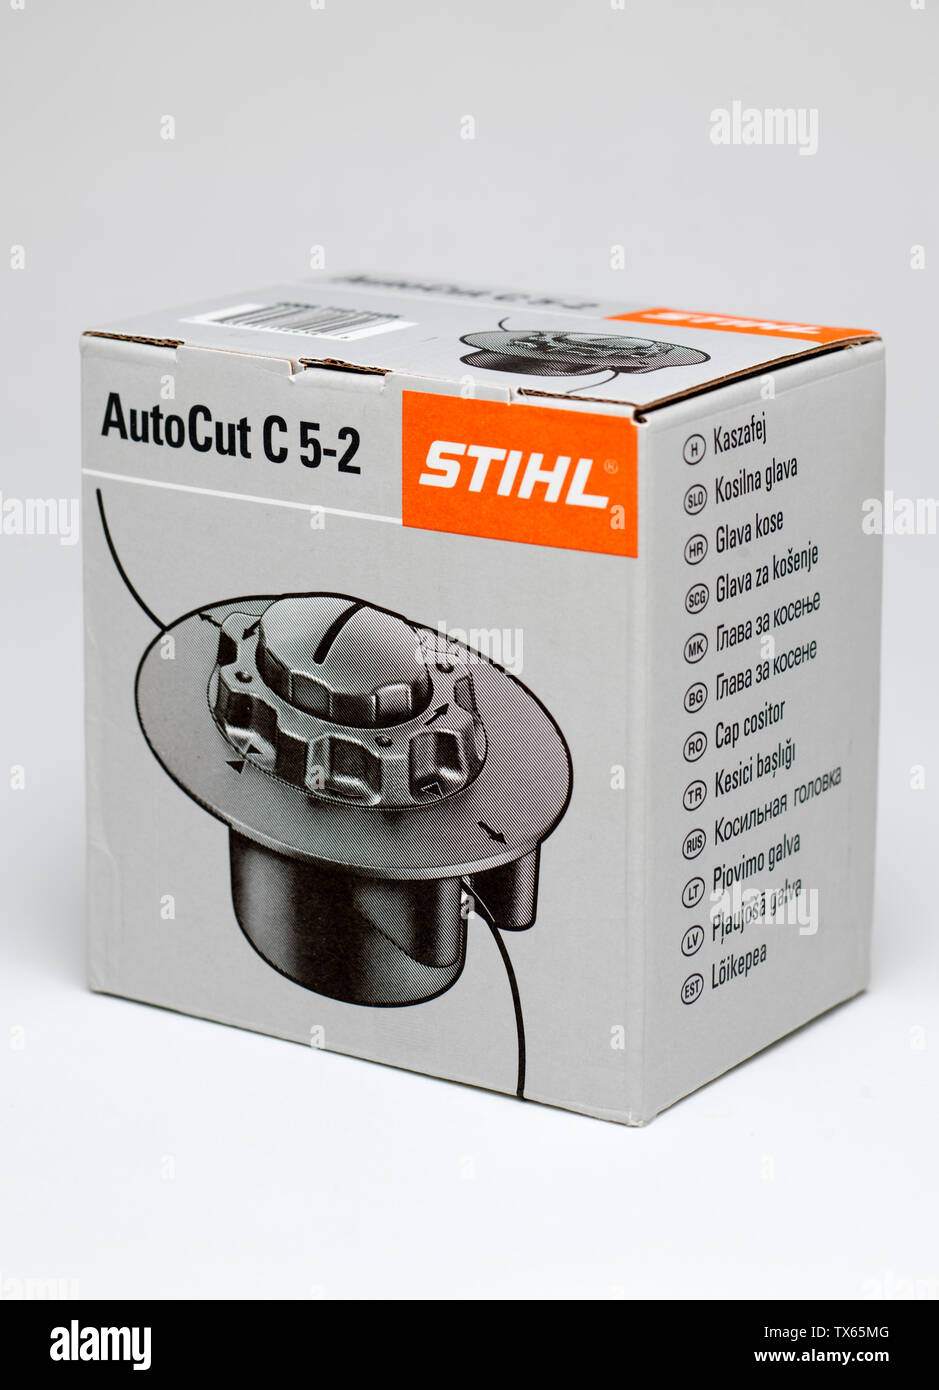 Sostituzione Stihl autocut C 5-2 per decespugliatore Foto Stock